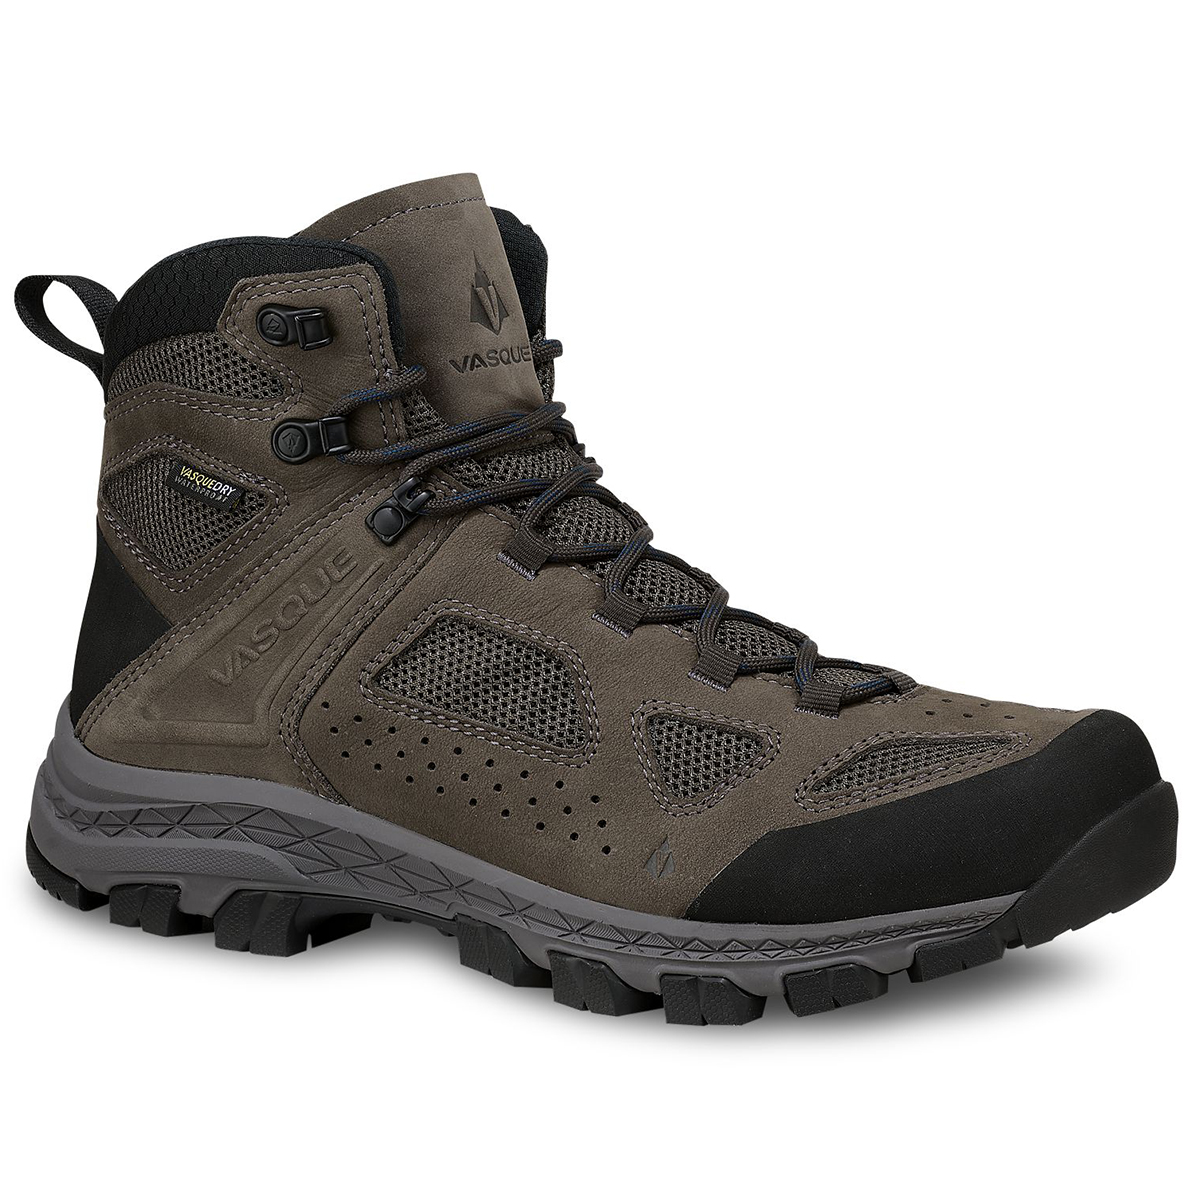 Vasque Men's Breeze Waterproof Hiking Boots